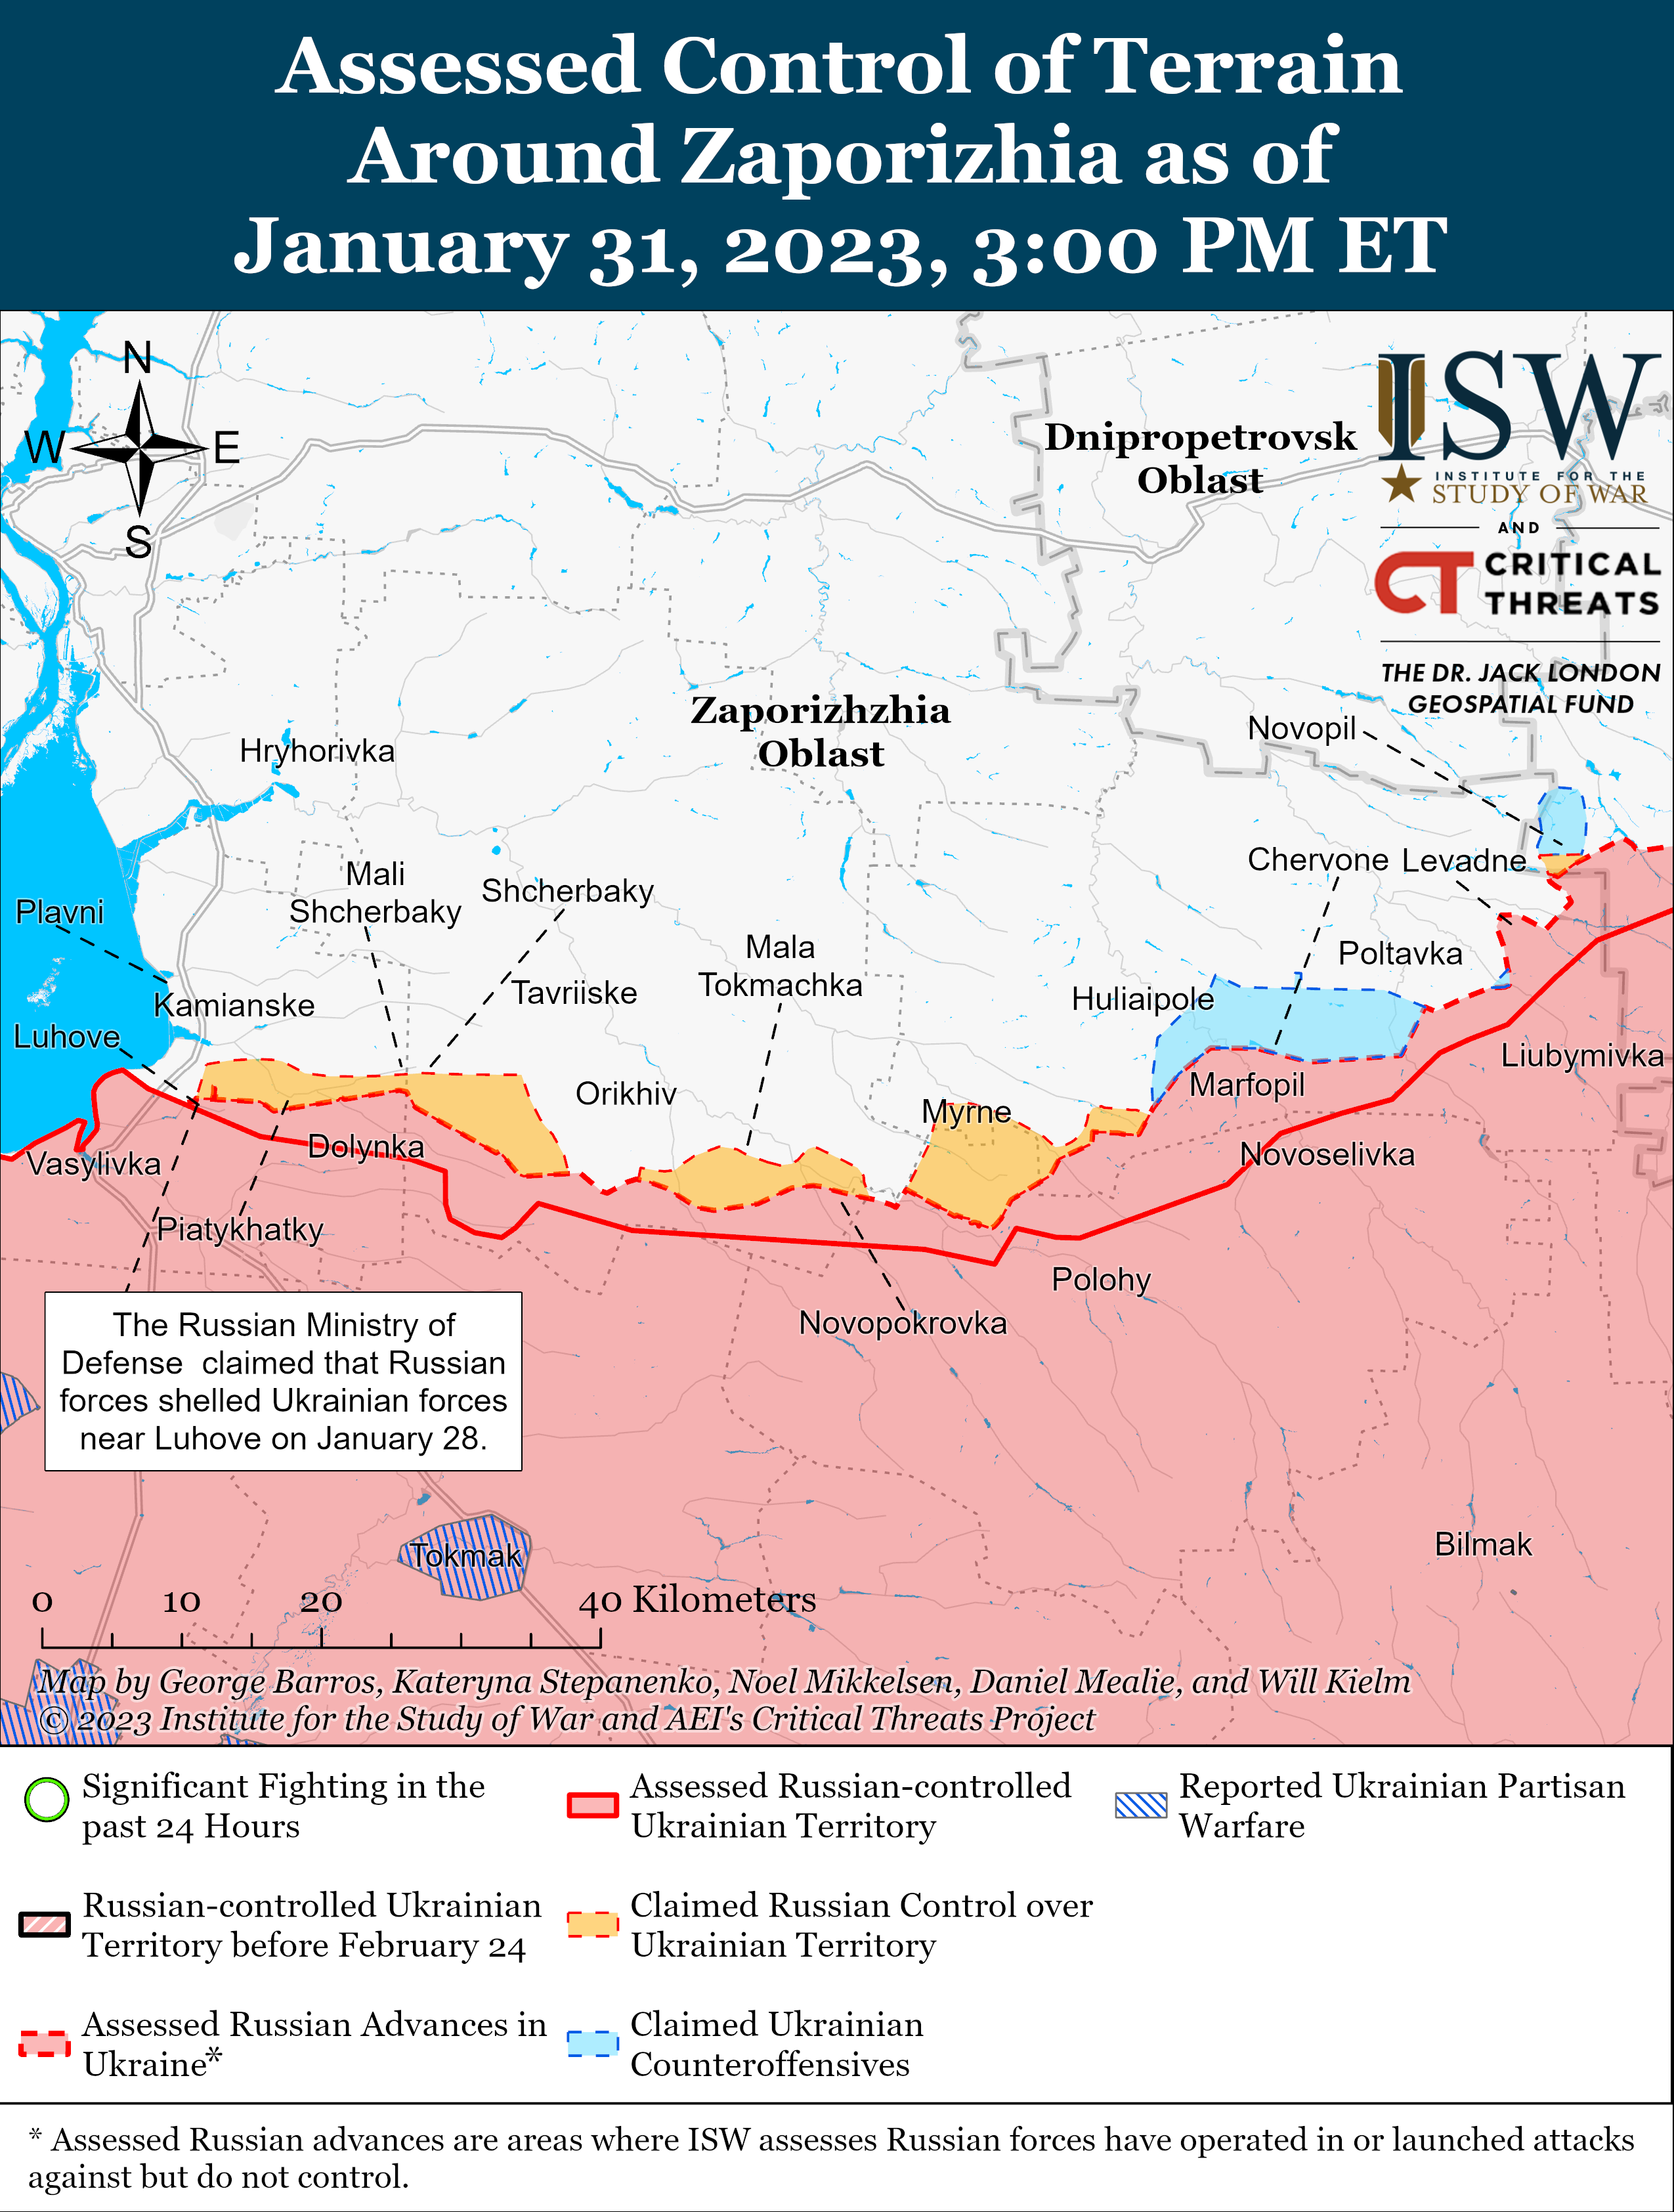 Українські військові розбили основні сили росіян під Вугледаром: карти боїв